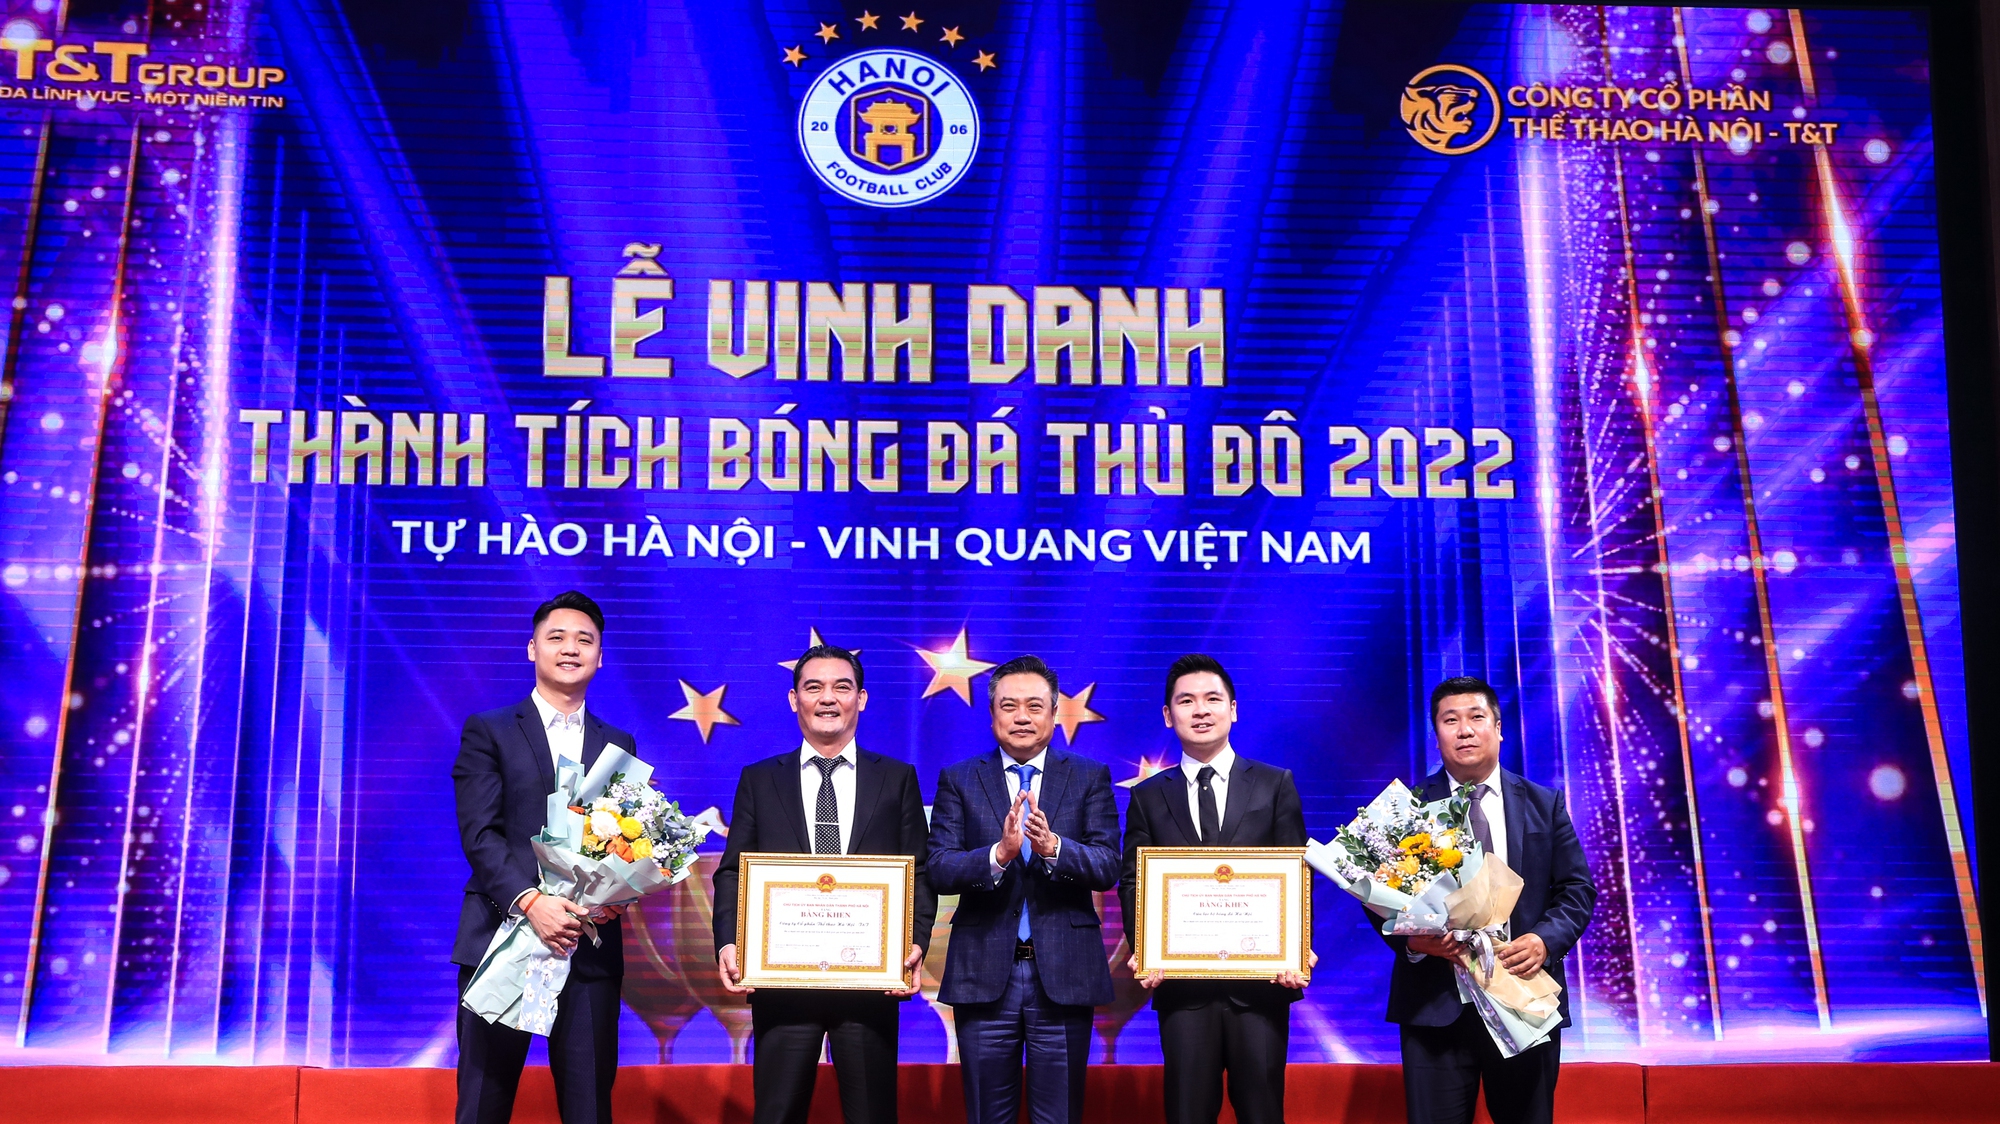 CLB Hà Nội thay logo sau chức vô địch V League thứ 6